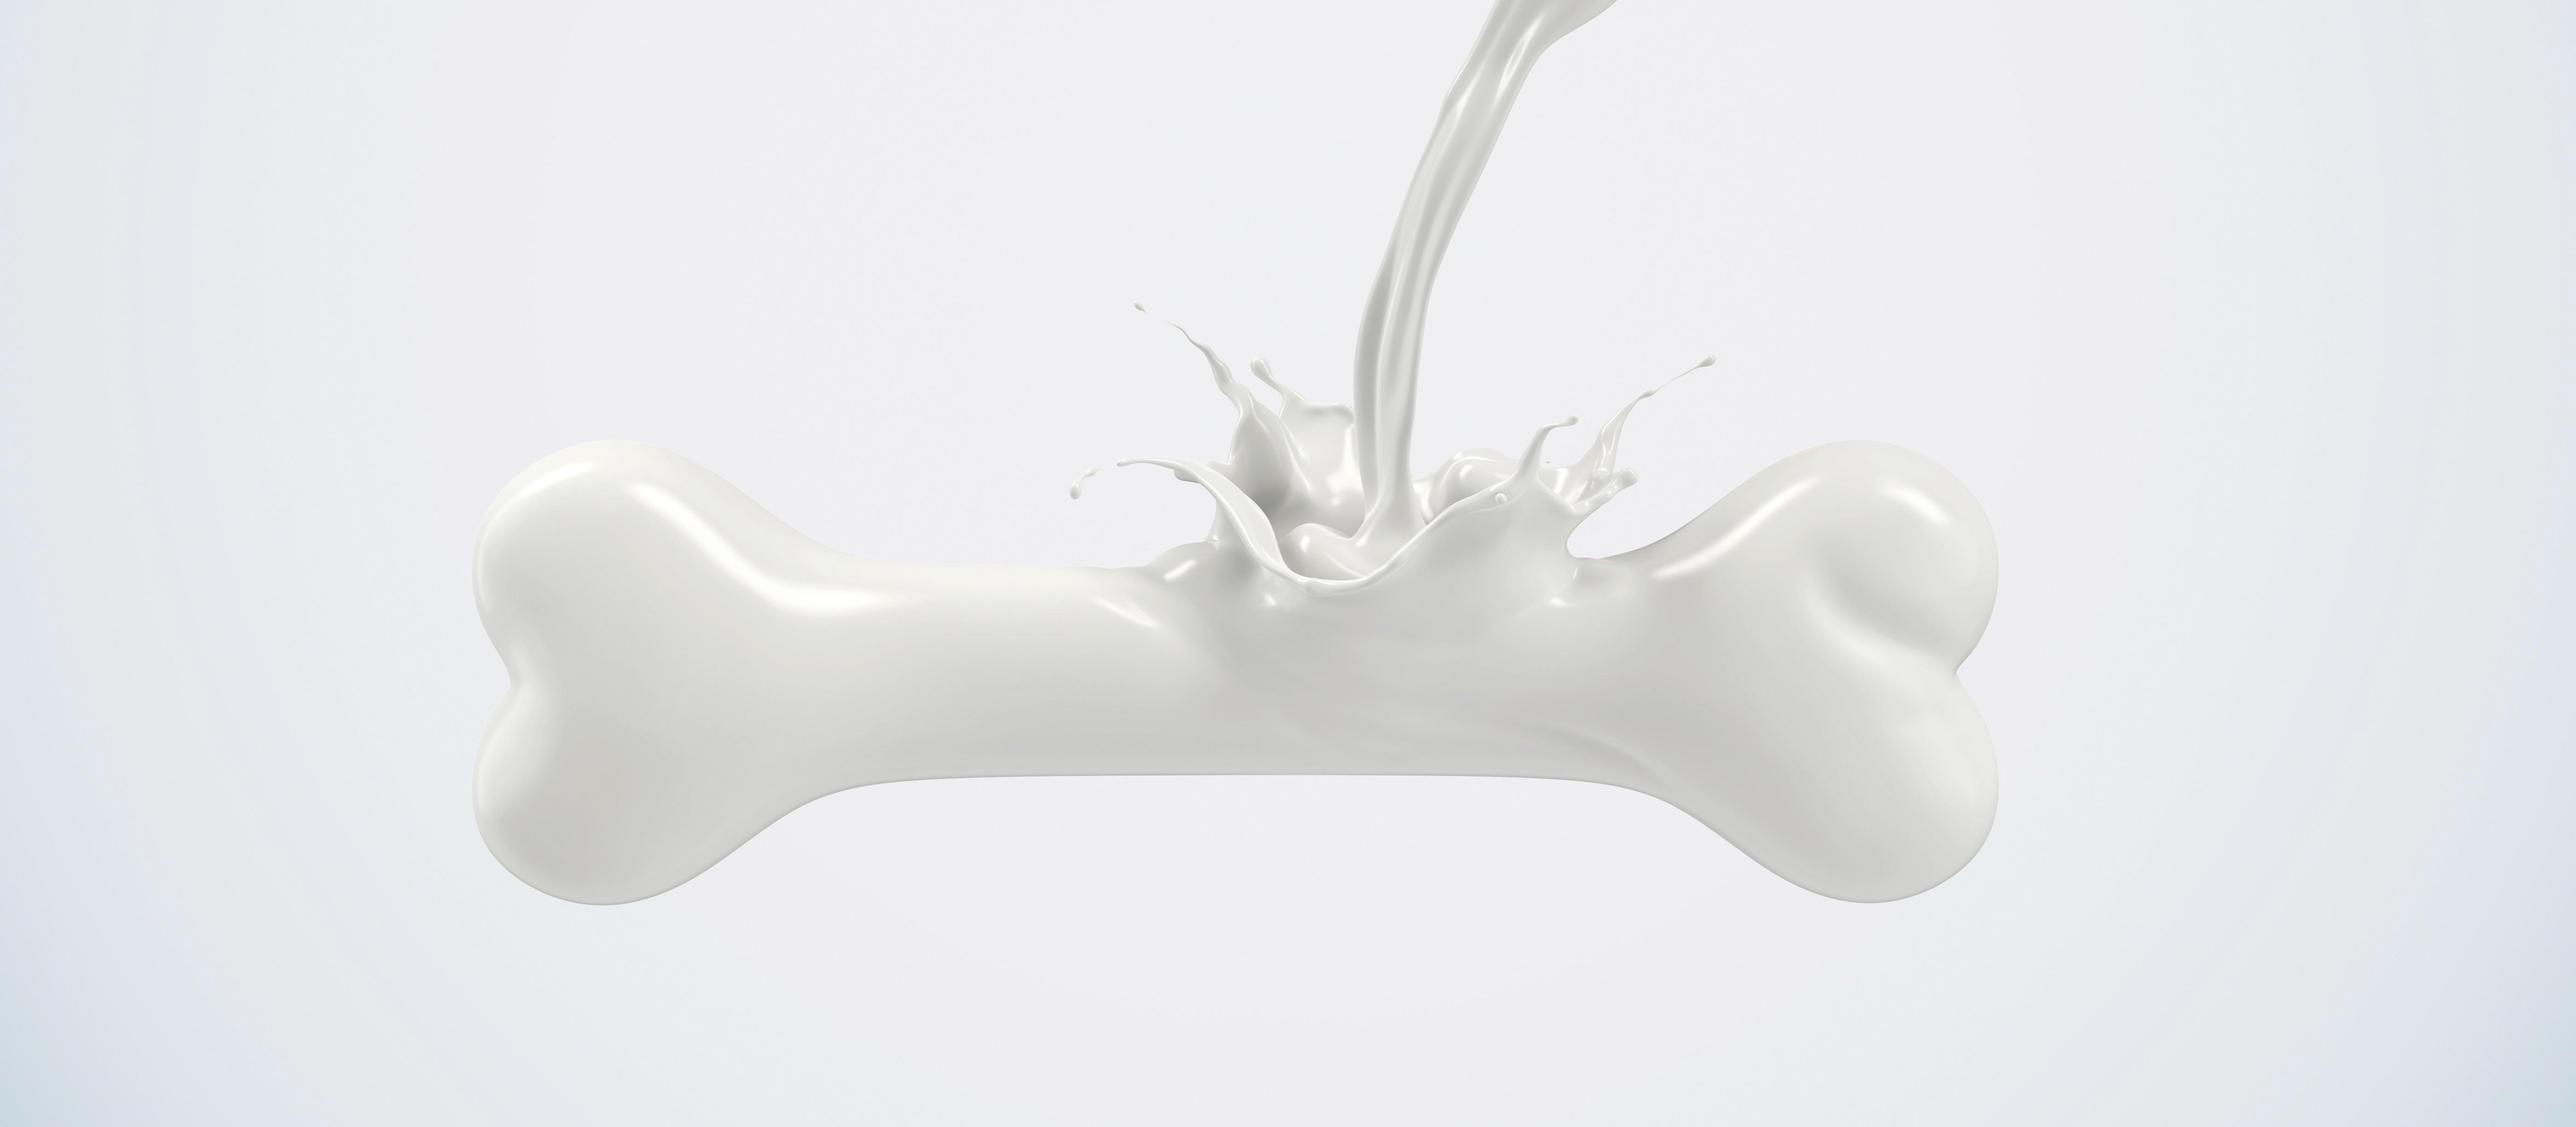 Milk bone calcium osteoporosis